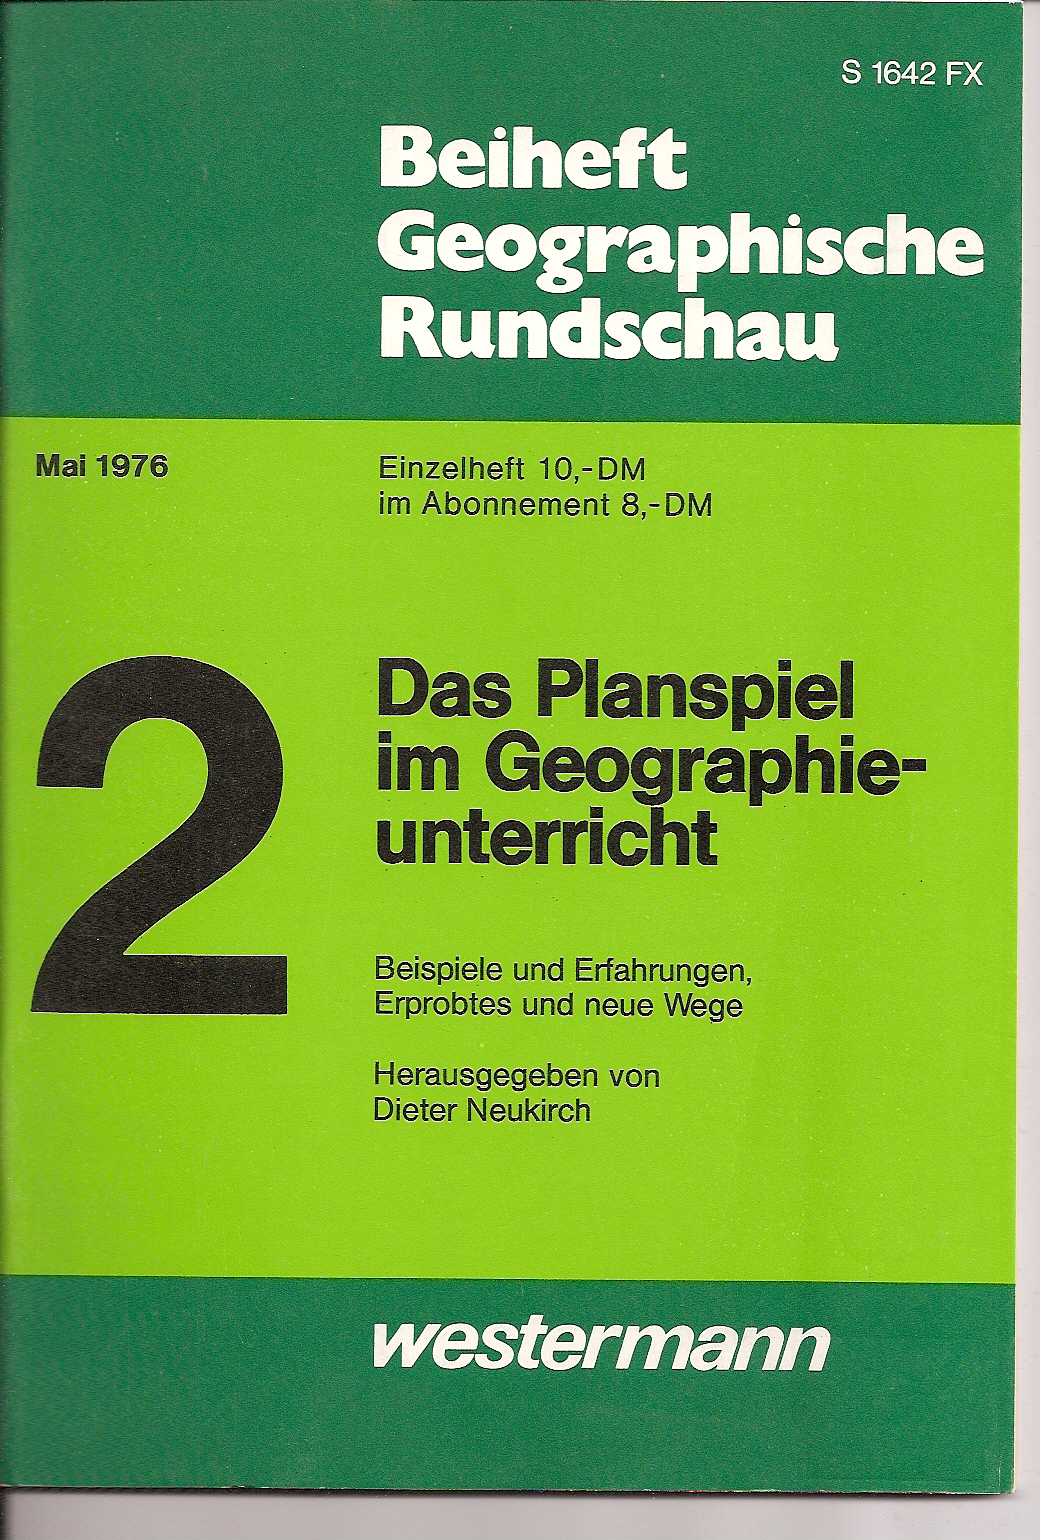 Beiheft Geographische Rundschau  Mai 1976 